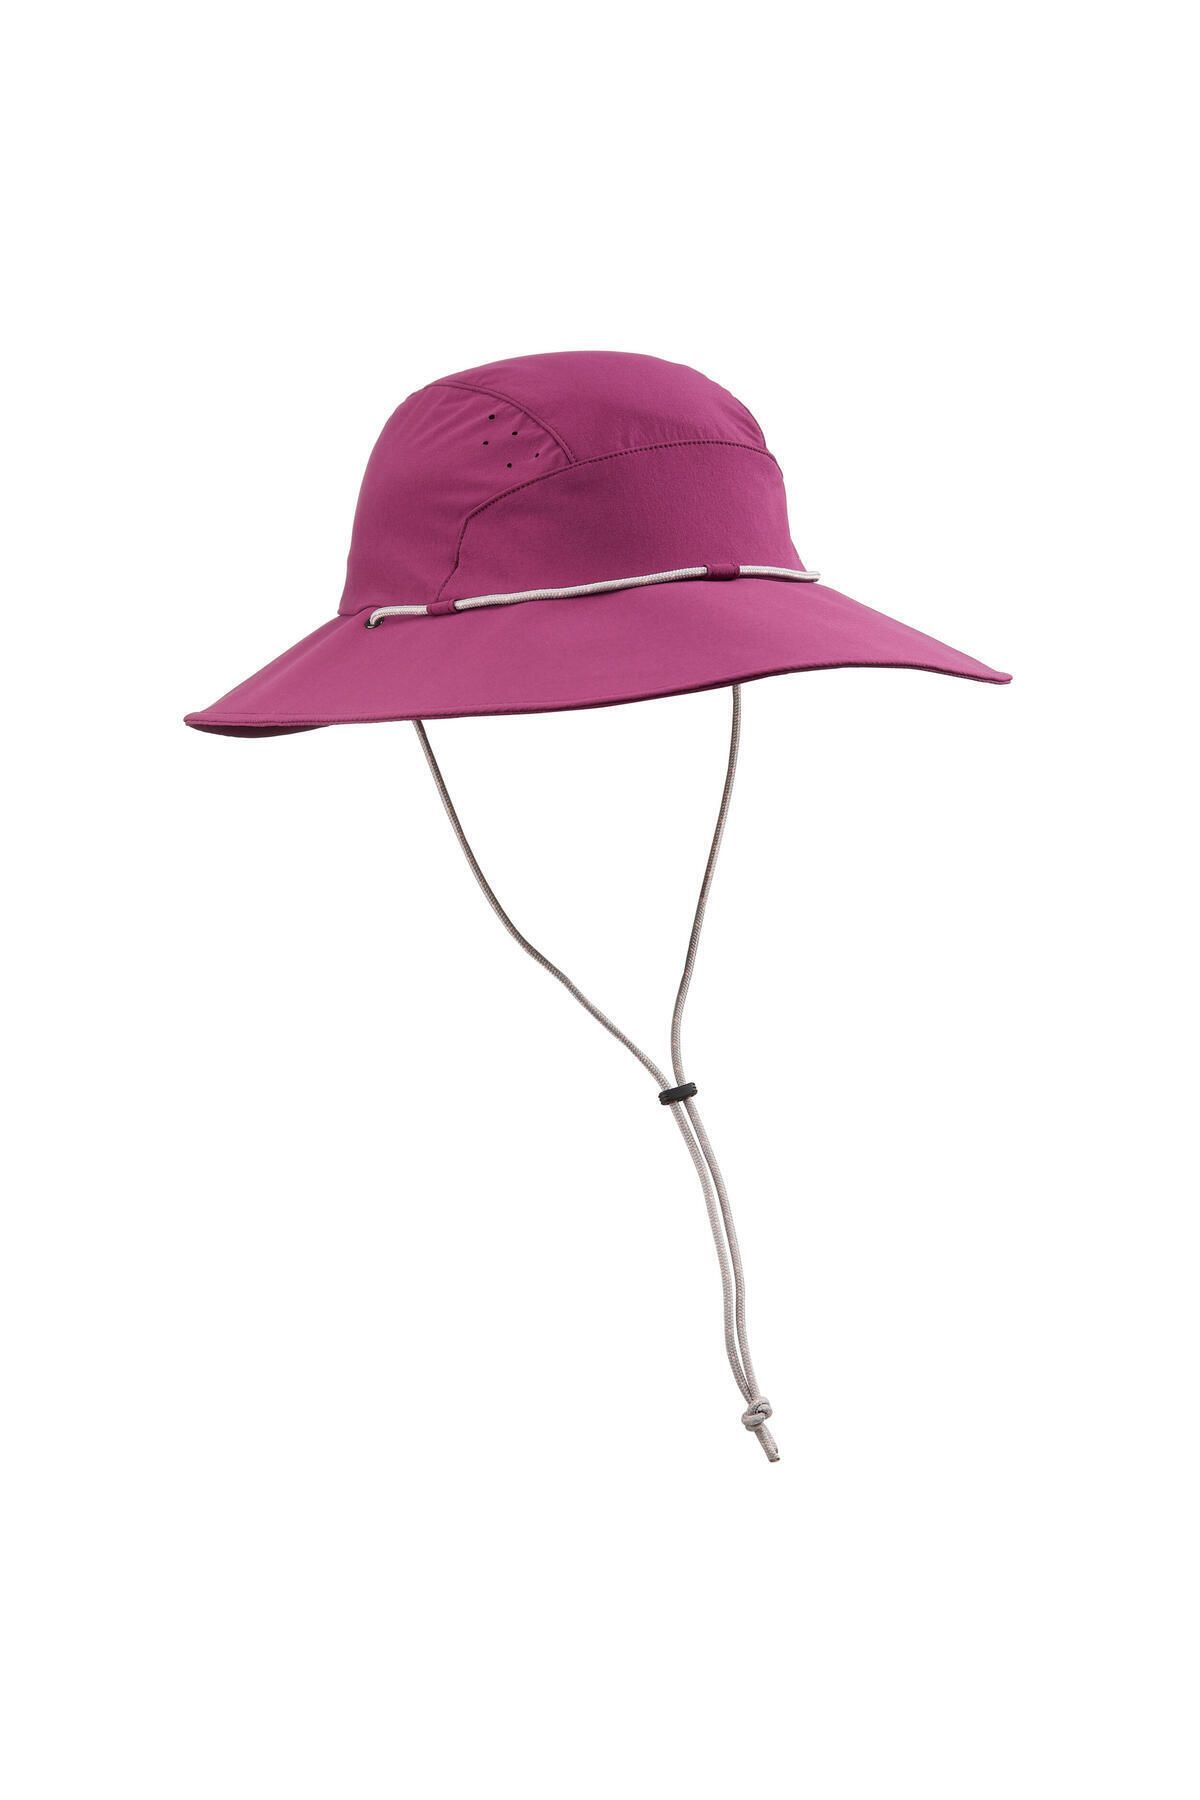 Decathlon Kadın Uv Korumalı Şapka - Mor - Trek500